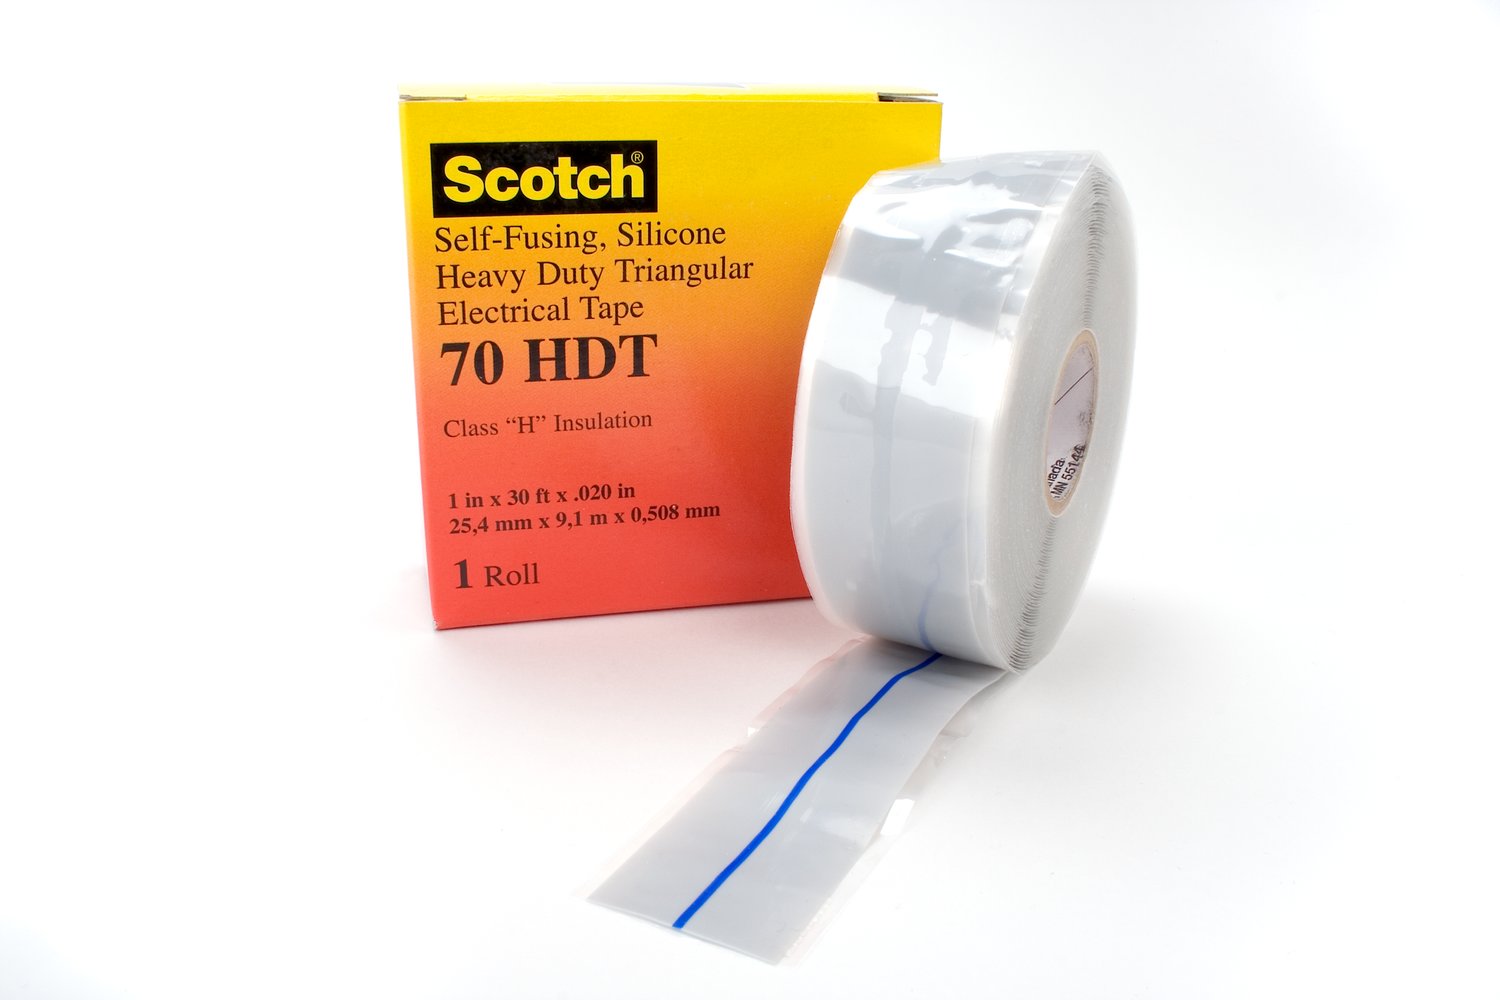 7000133168 - Scotch Heavy Duty Rubber Electrical Tape 70 HDT, 1 in x 30 ft, Sky
Blue/Gray, 1 roll/carton, 24 rolls/case